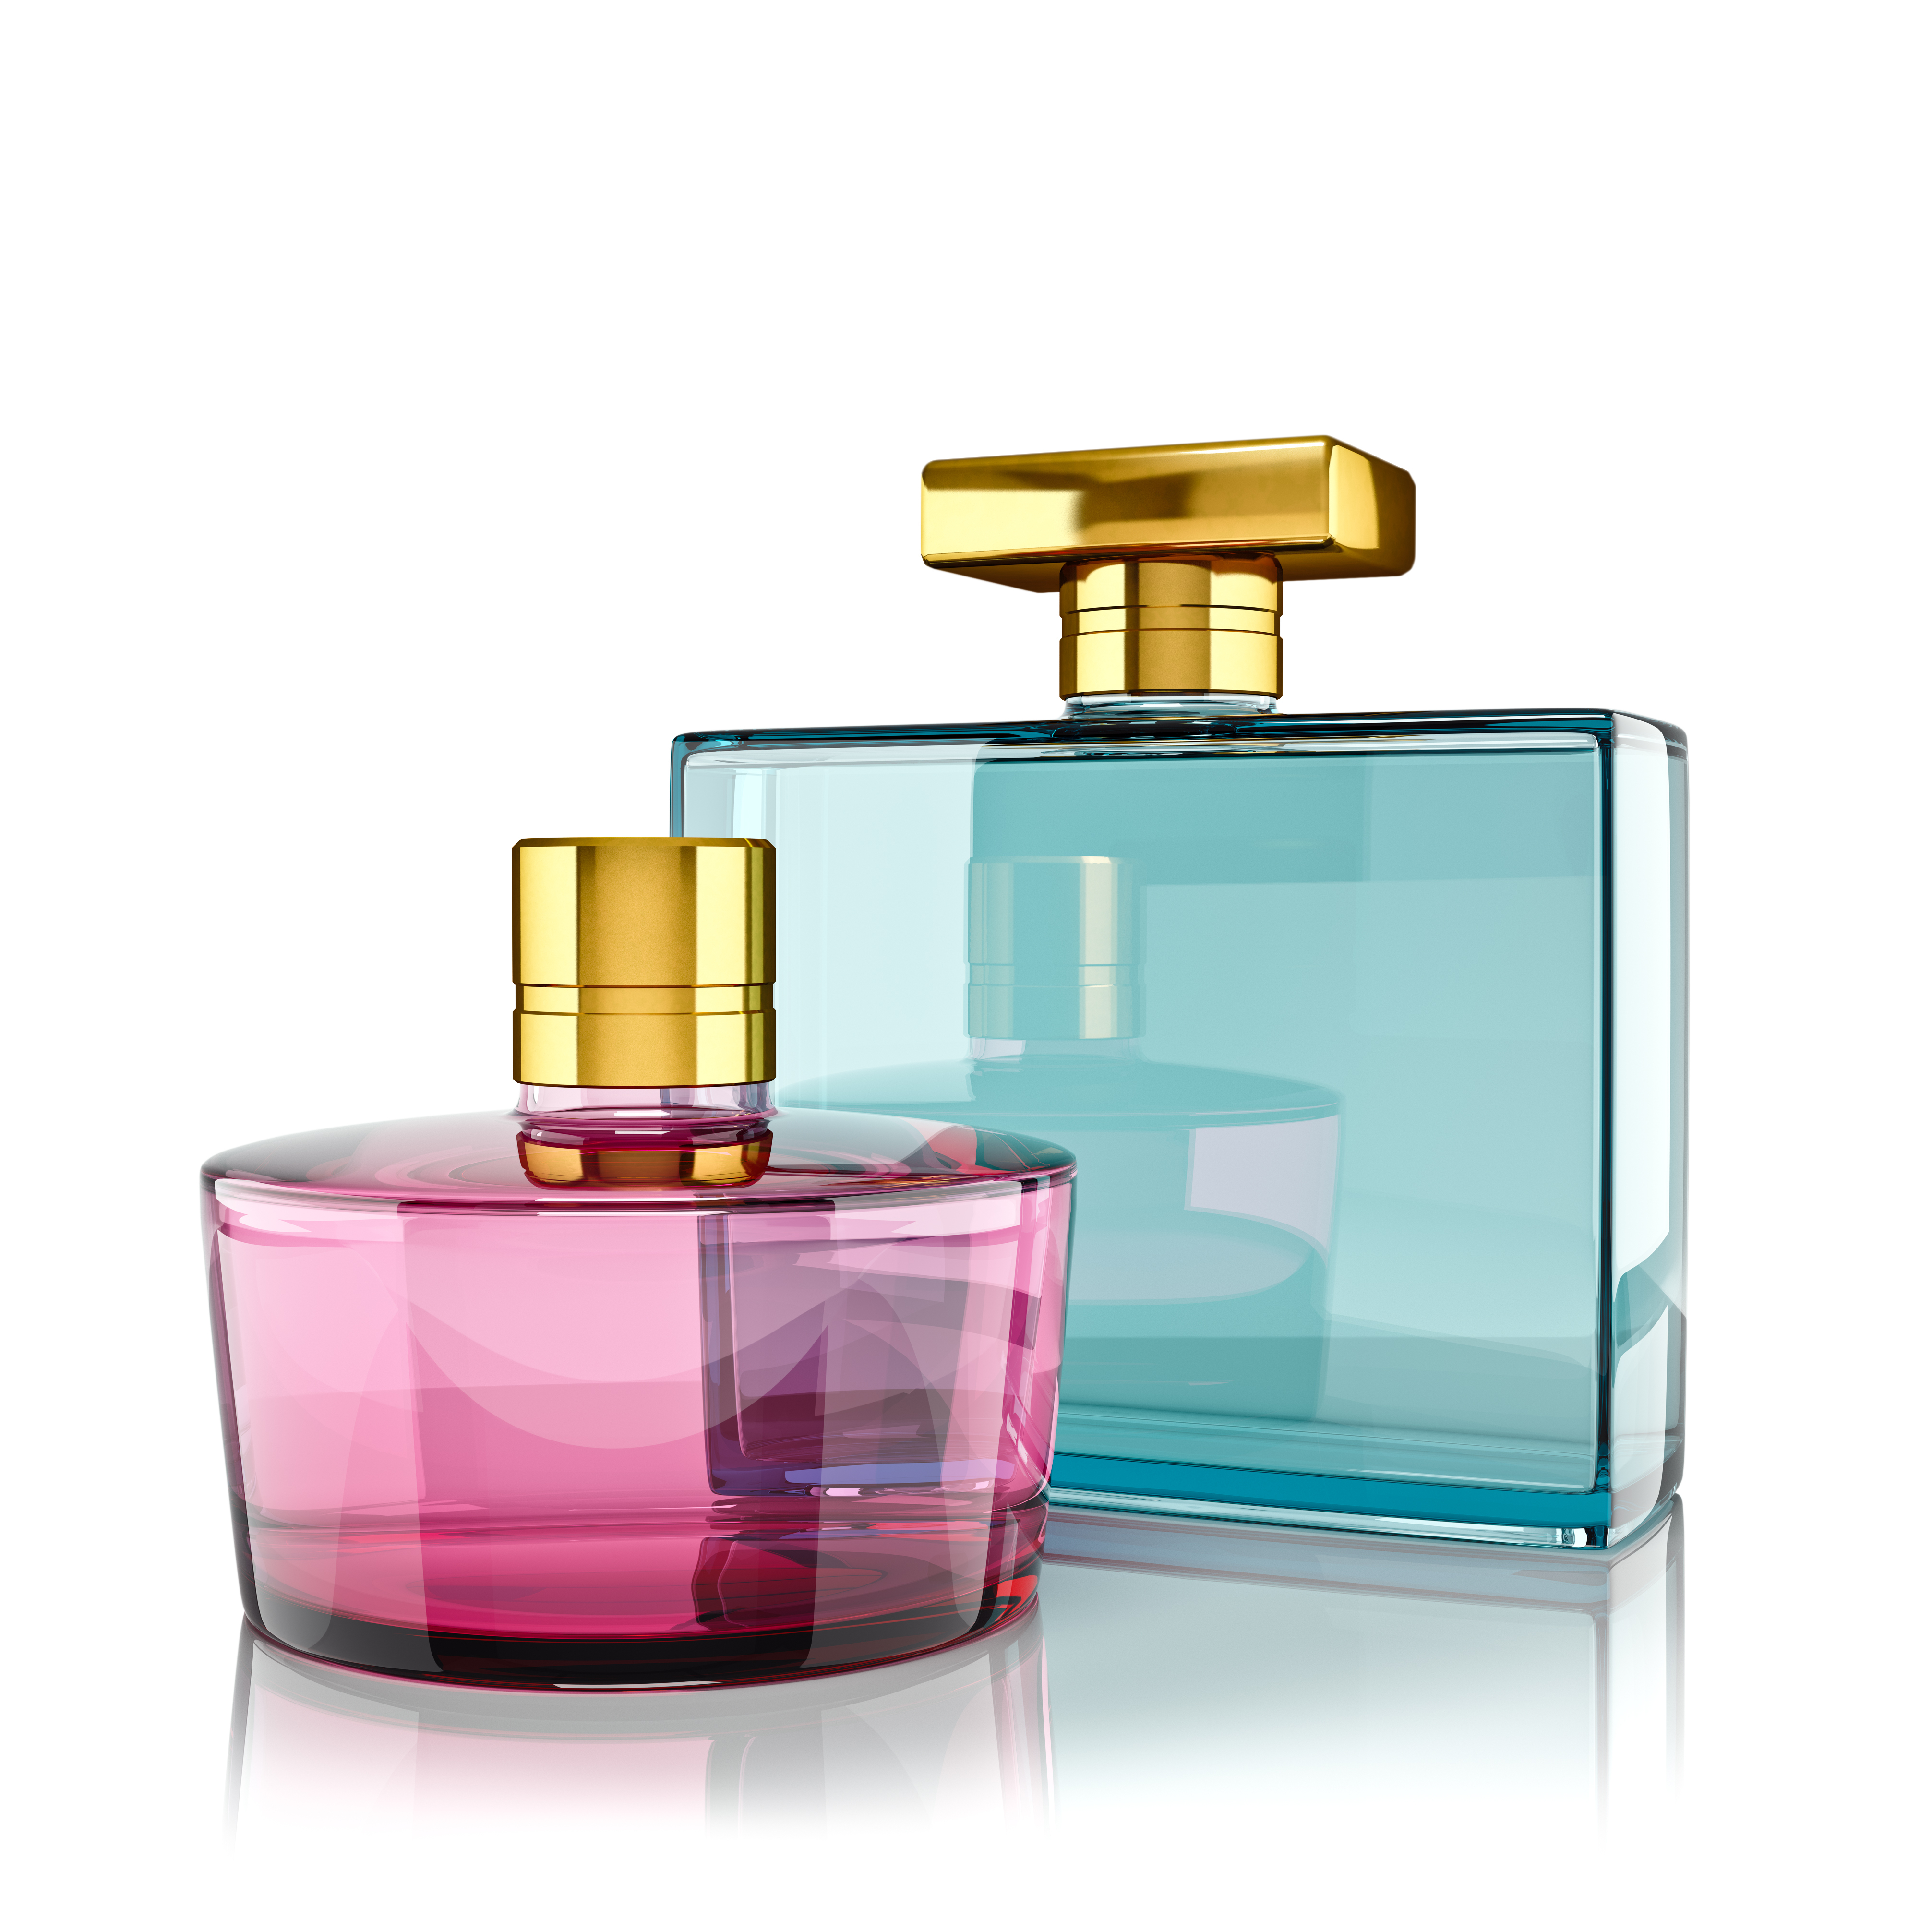 Aposte nos perfumes se você souber o gosto do presenteado